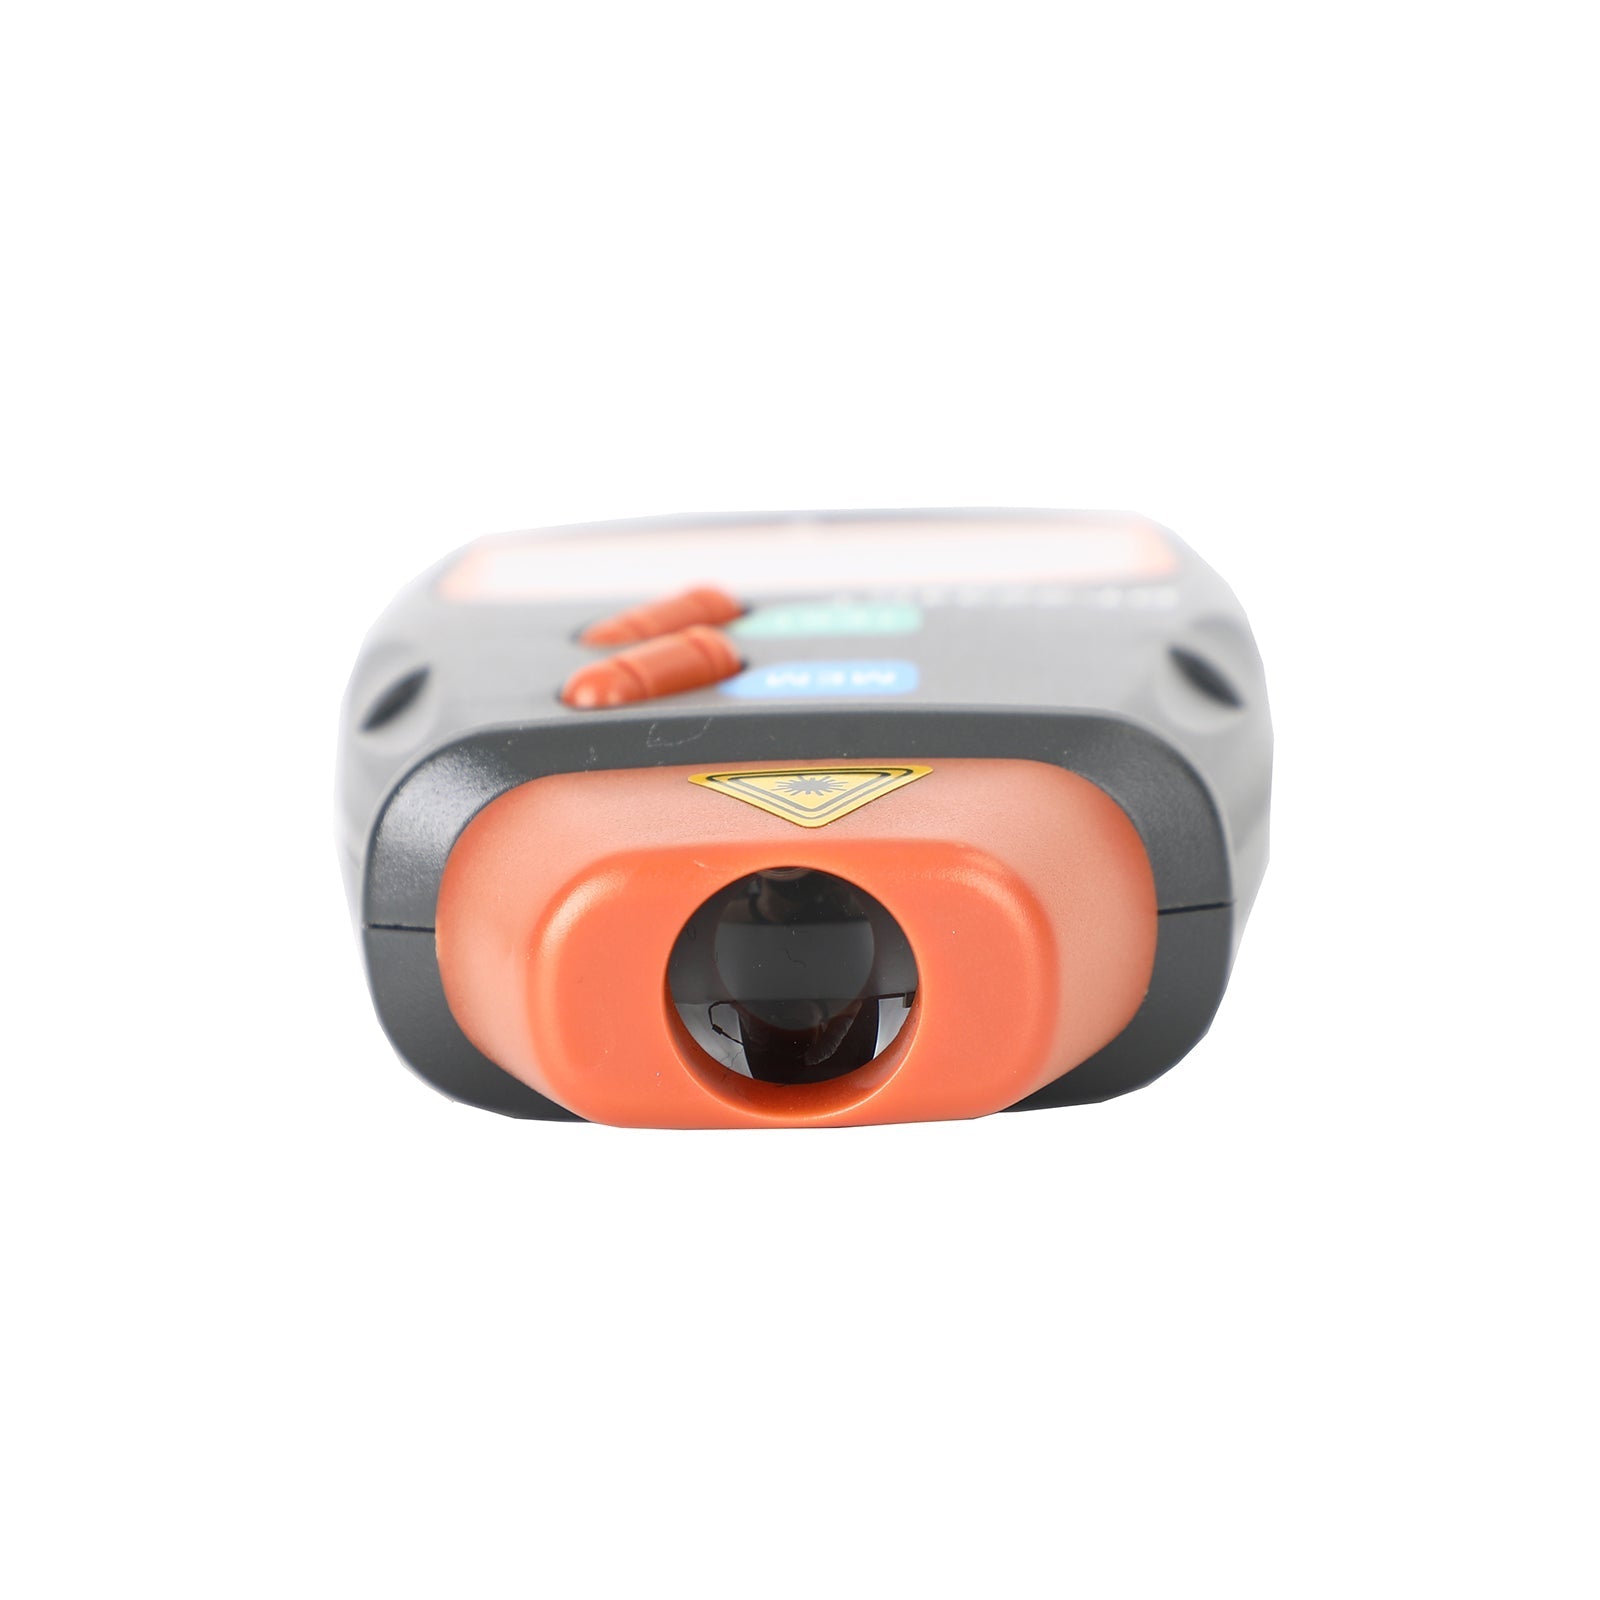 Tachymètre numérique sans contact Laser Photo Tach RPM testeur outil de jauge portable